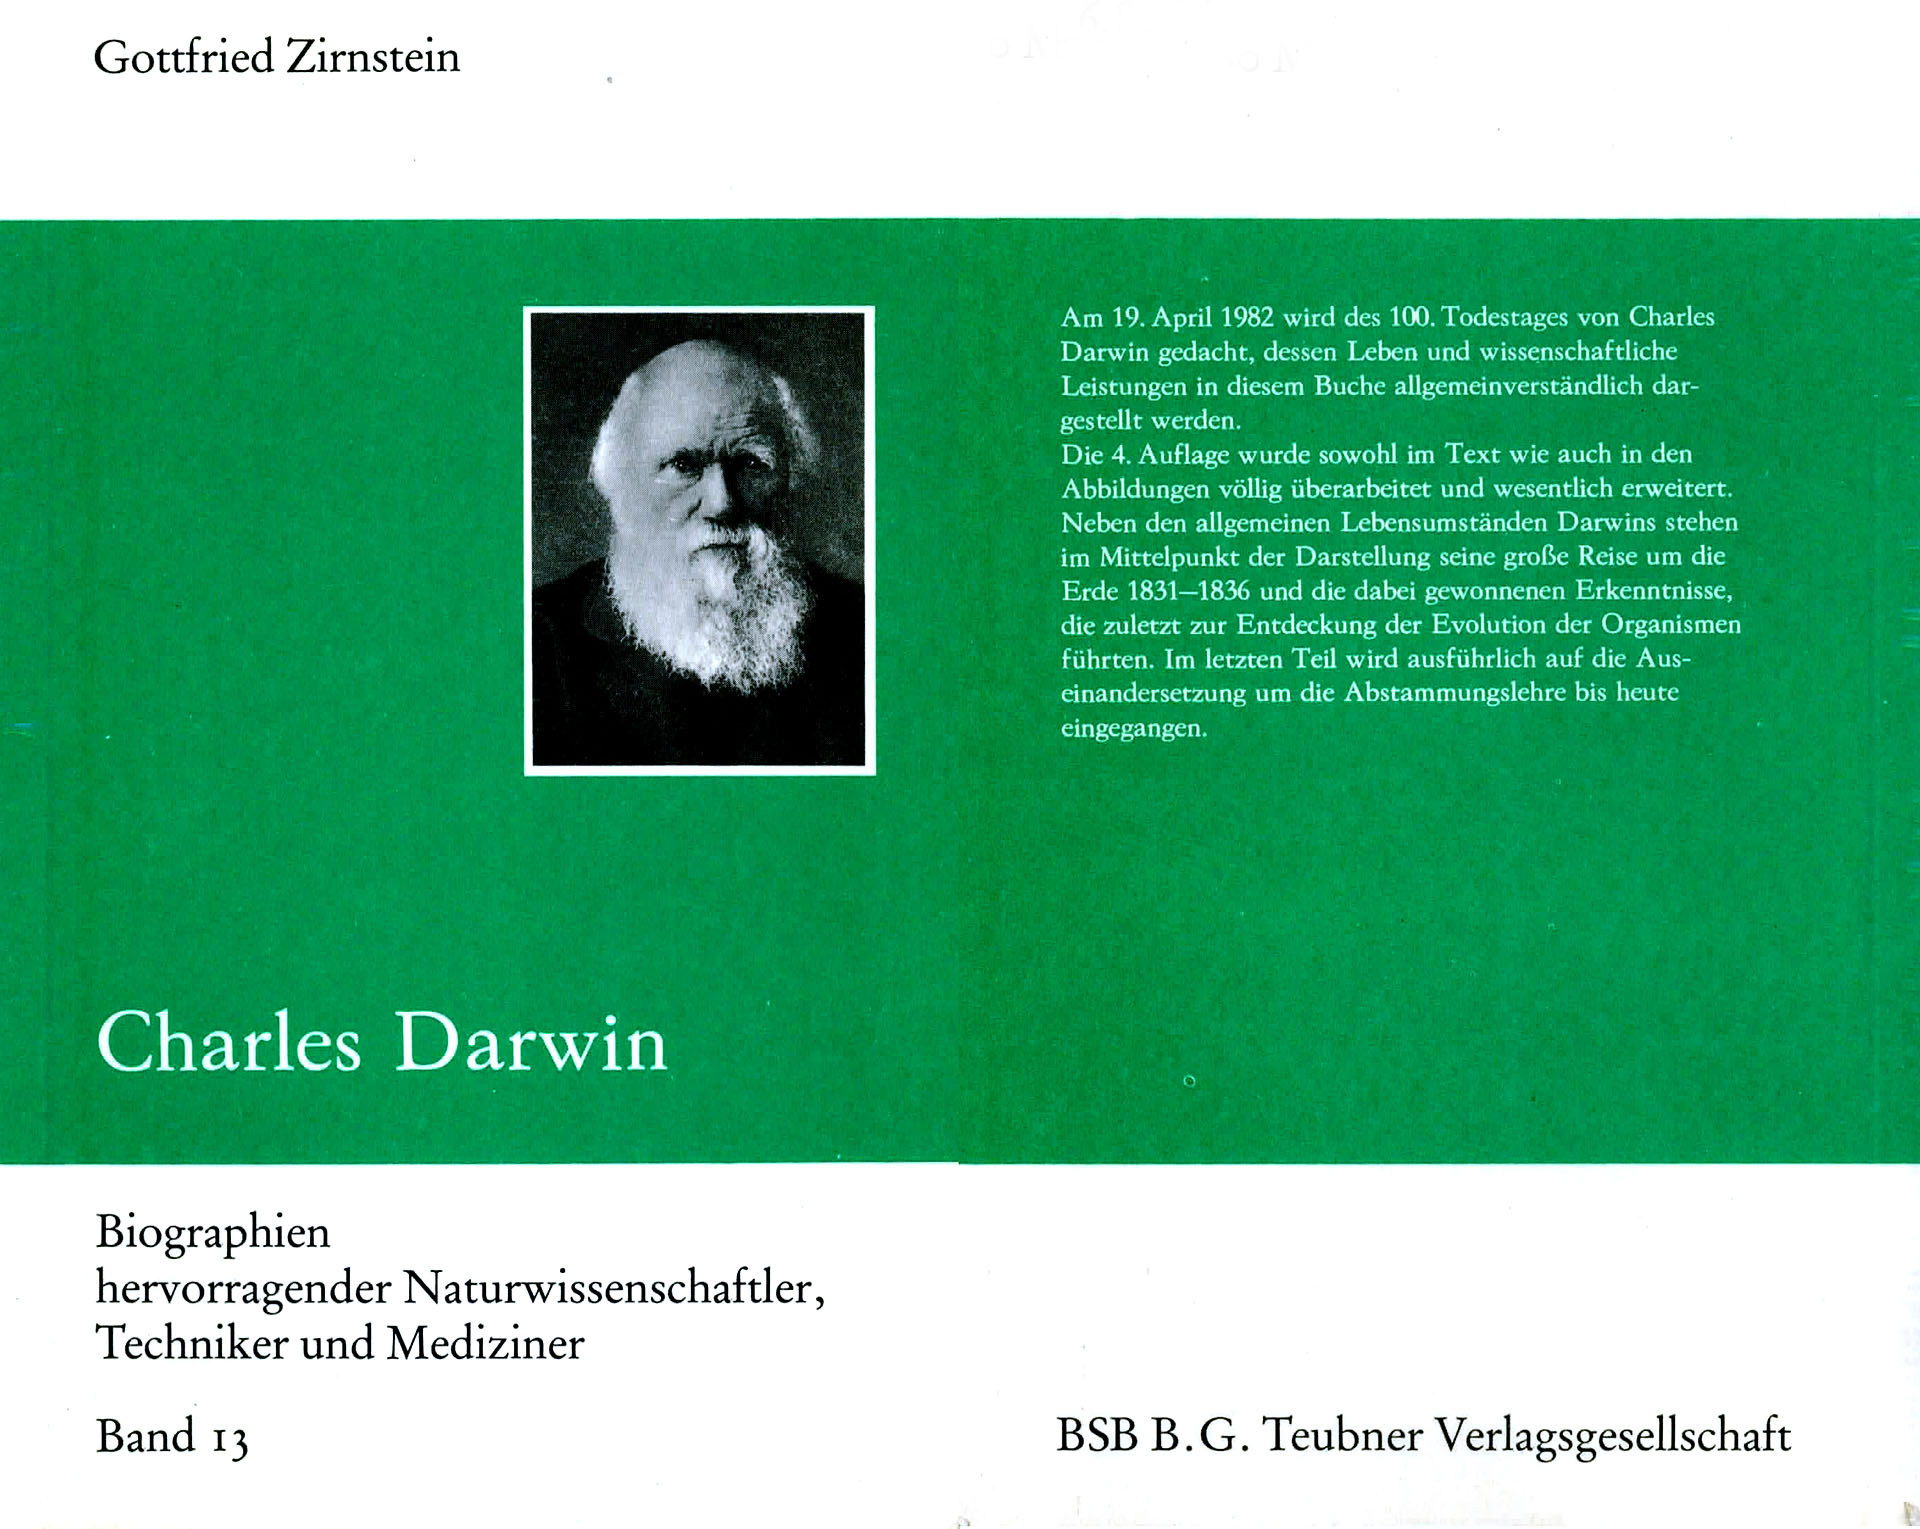 Charles Darwin - Zirnstein, Gottfried